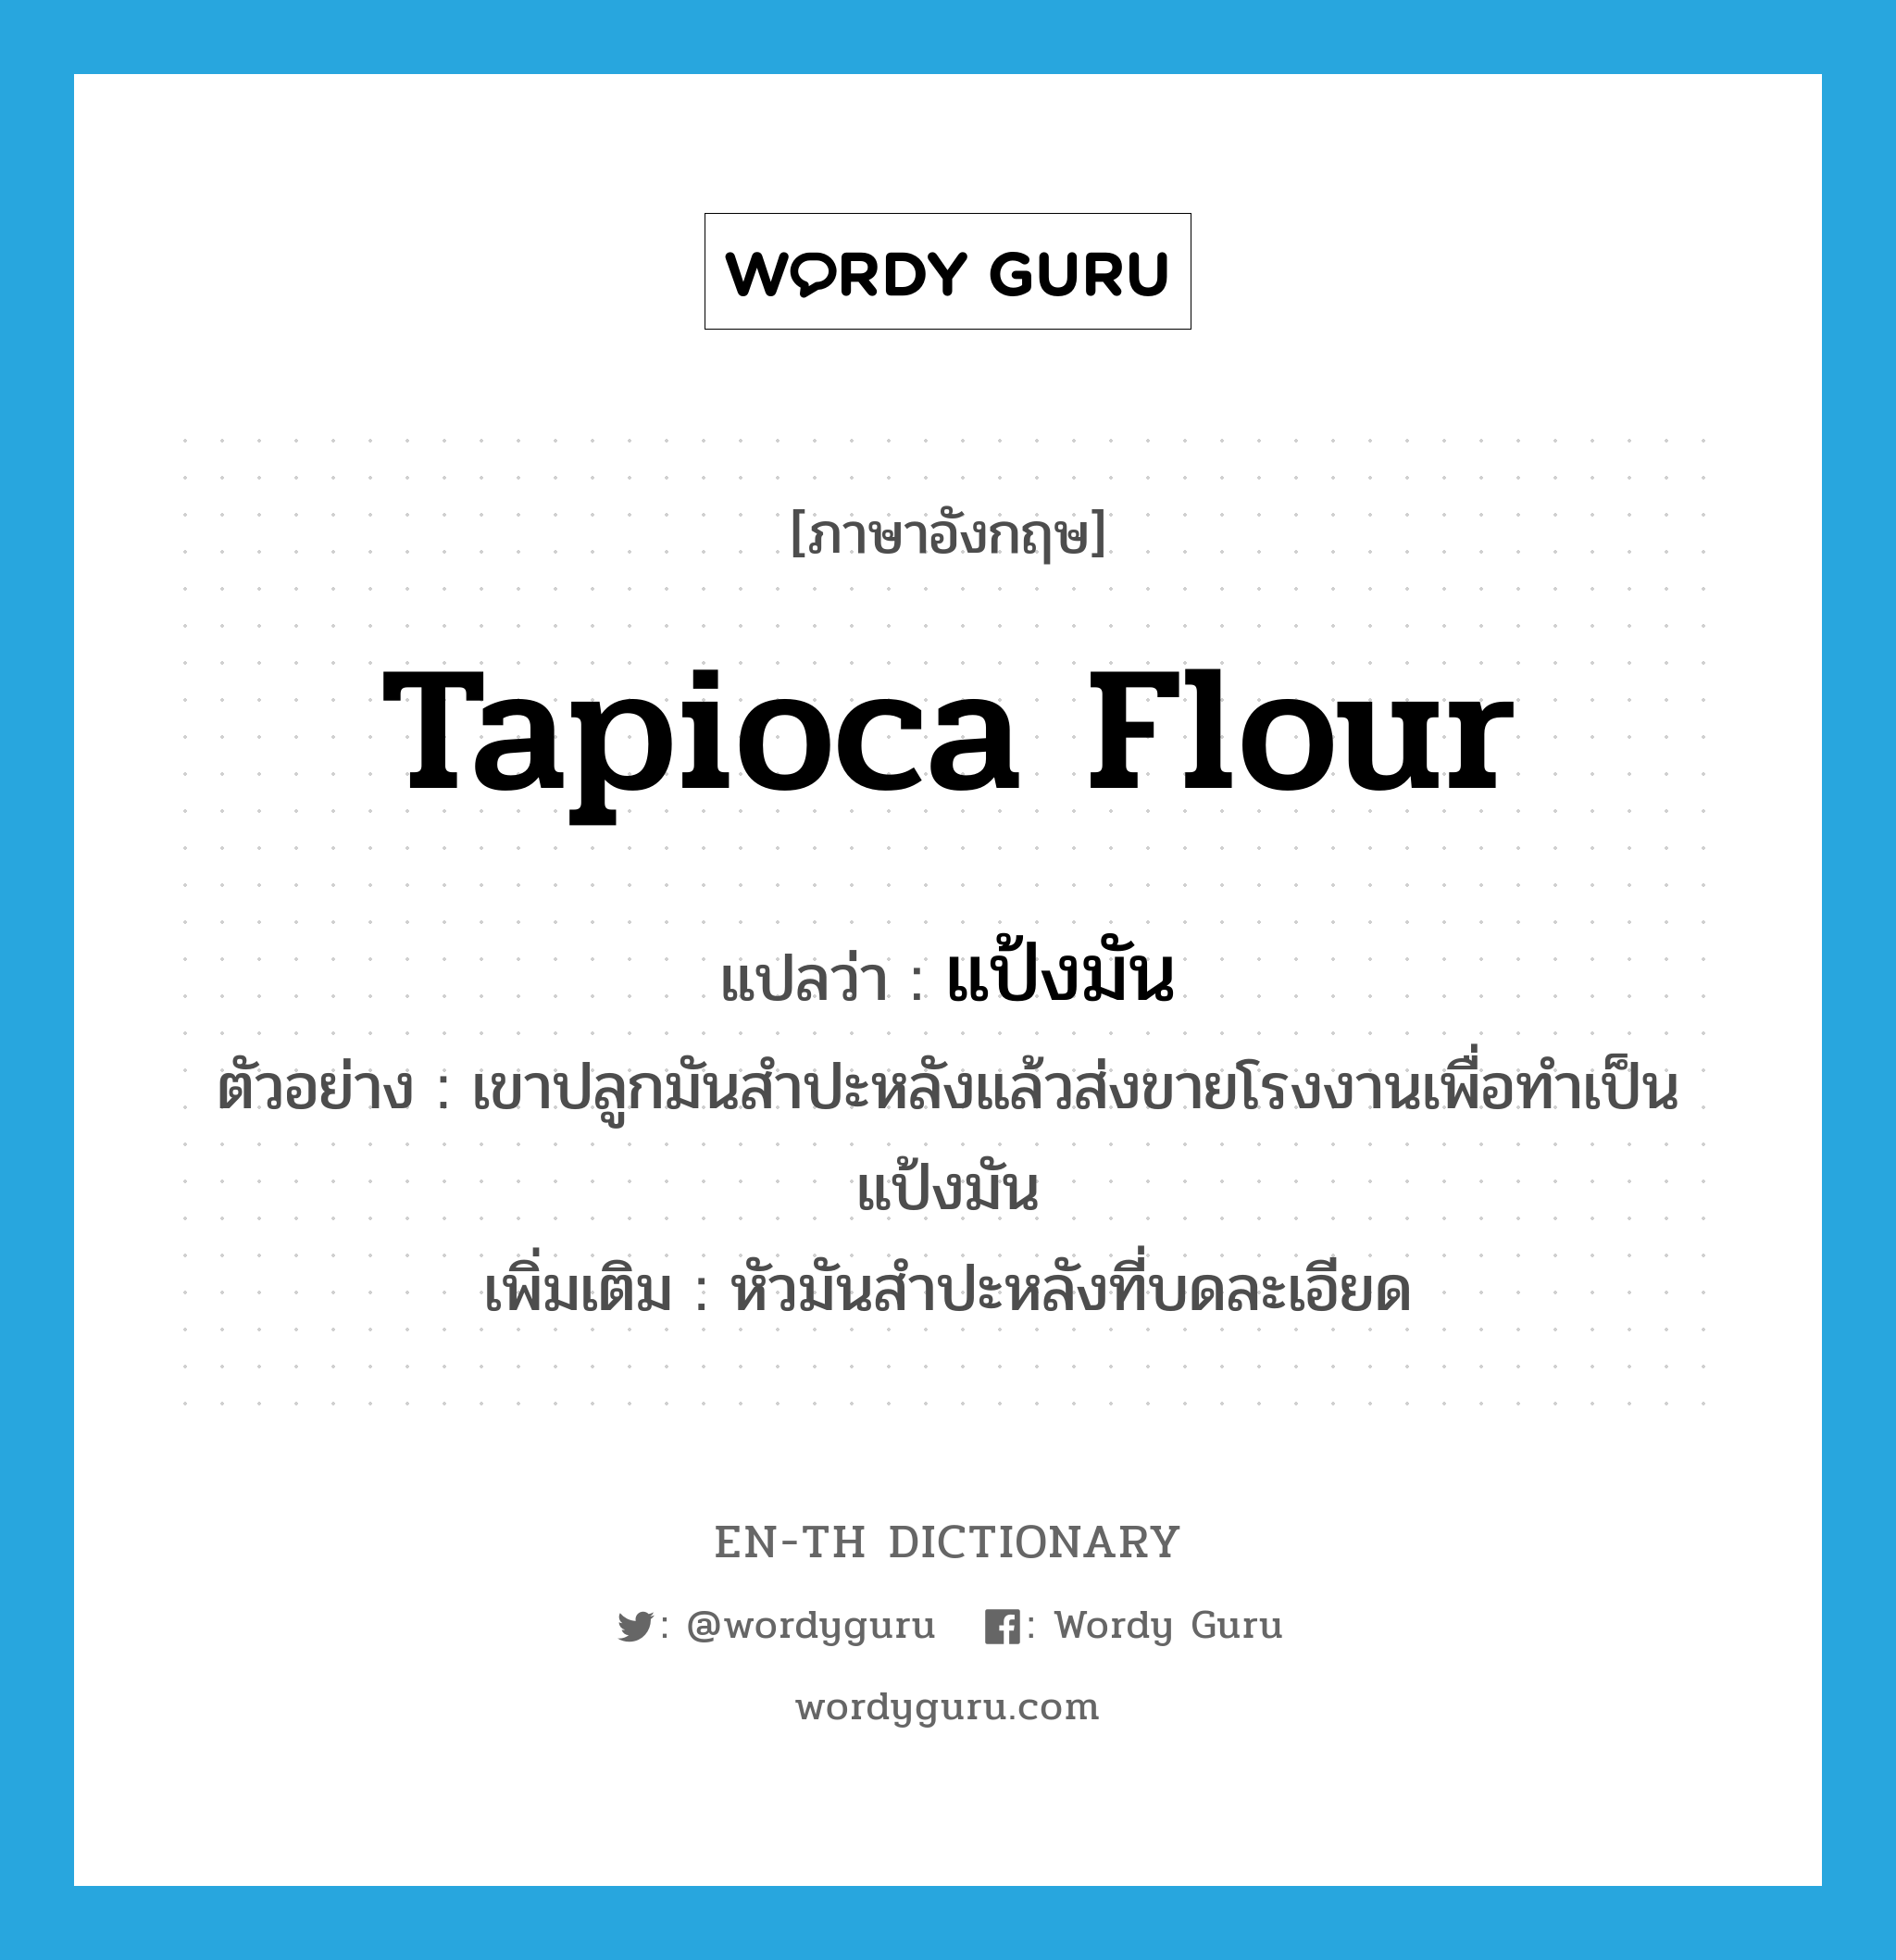 tapioca flour แปลว่า?, คำศัพท์ภาษาอังกฤษ tapioca flour แปลว่า แป้งมัน ประเภท N ตัวอย่าง เขาปลูกมันสำปะหลังแล้วส่งขายโรงงานเพื่อทำเป็นแป้งมัน เพิ่มเติม หัวมันสำปะหลังที่บดละเอียด หมวด N